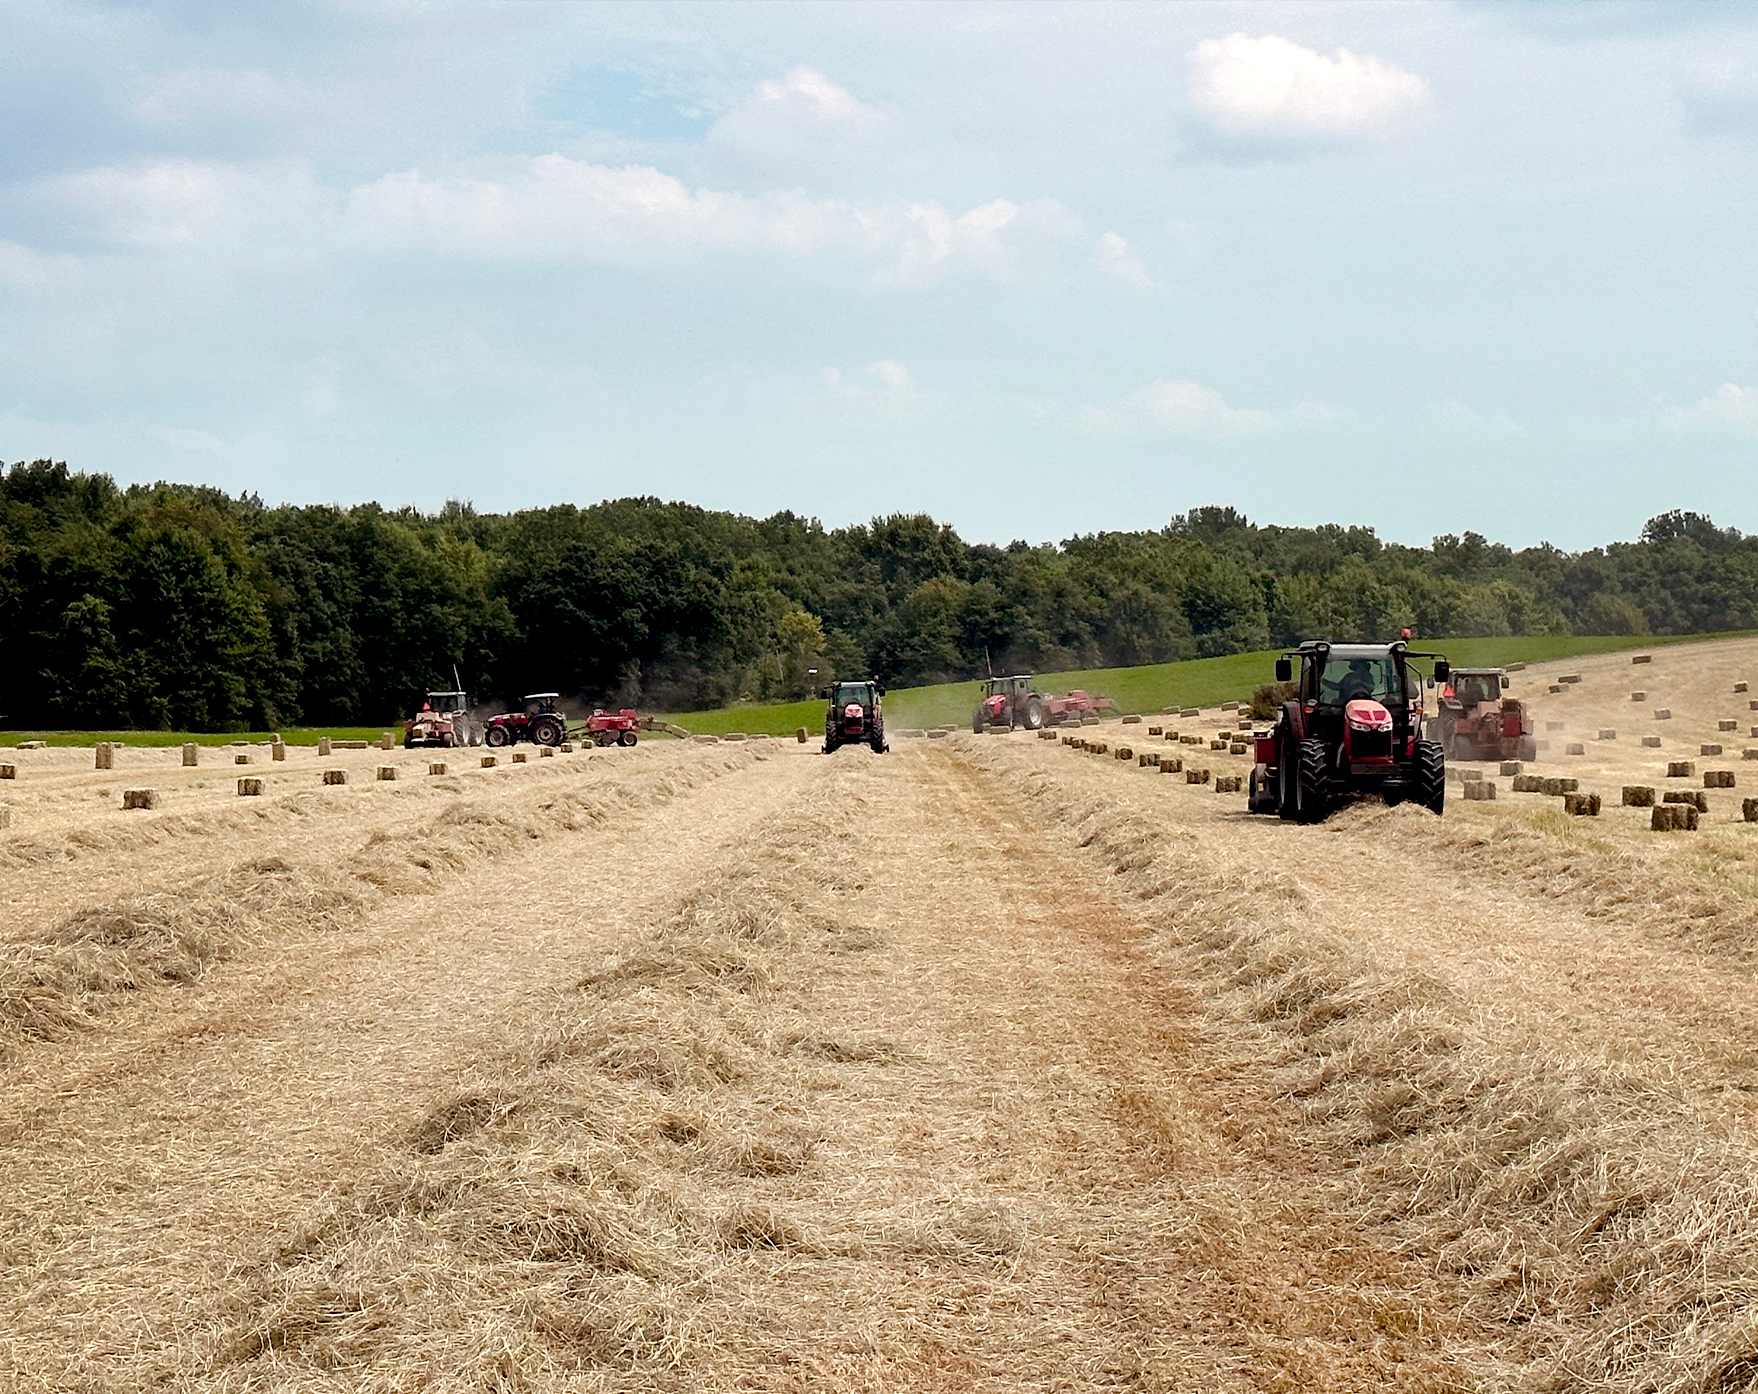 <img src="hayfield.jpg" alt="Tractors baling hay" />